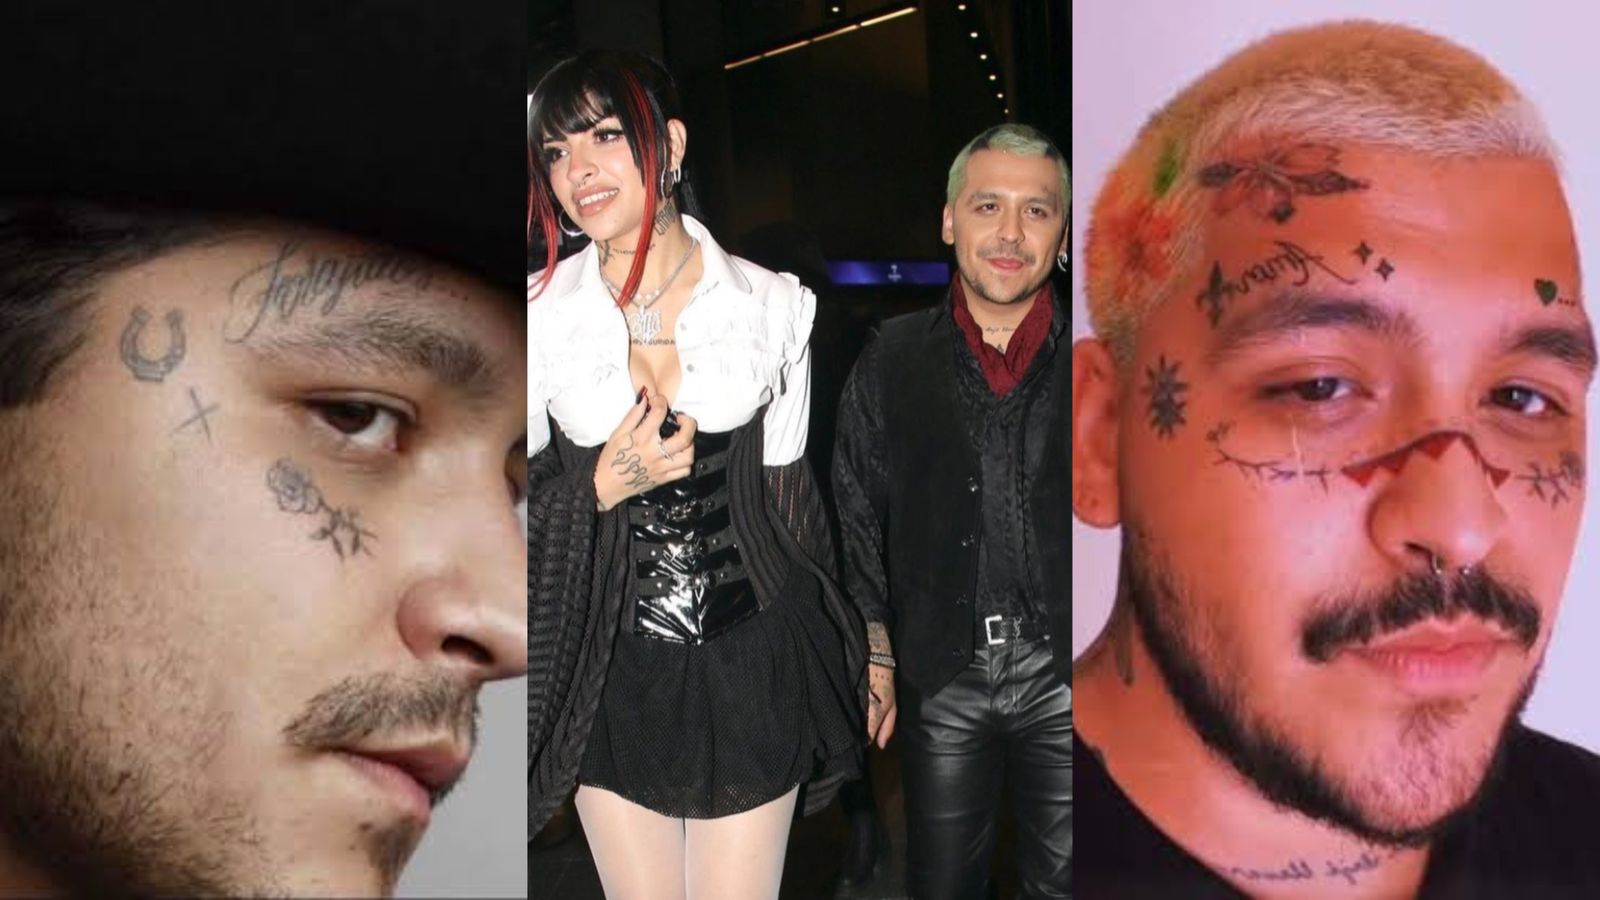 Henna o maquillaje?”: Christian Nodal reapareció al lado de Cazzu en  Argentina sin tatuajes - Infobae